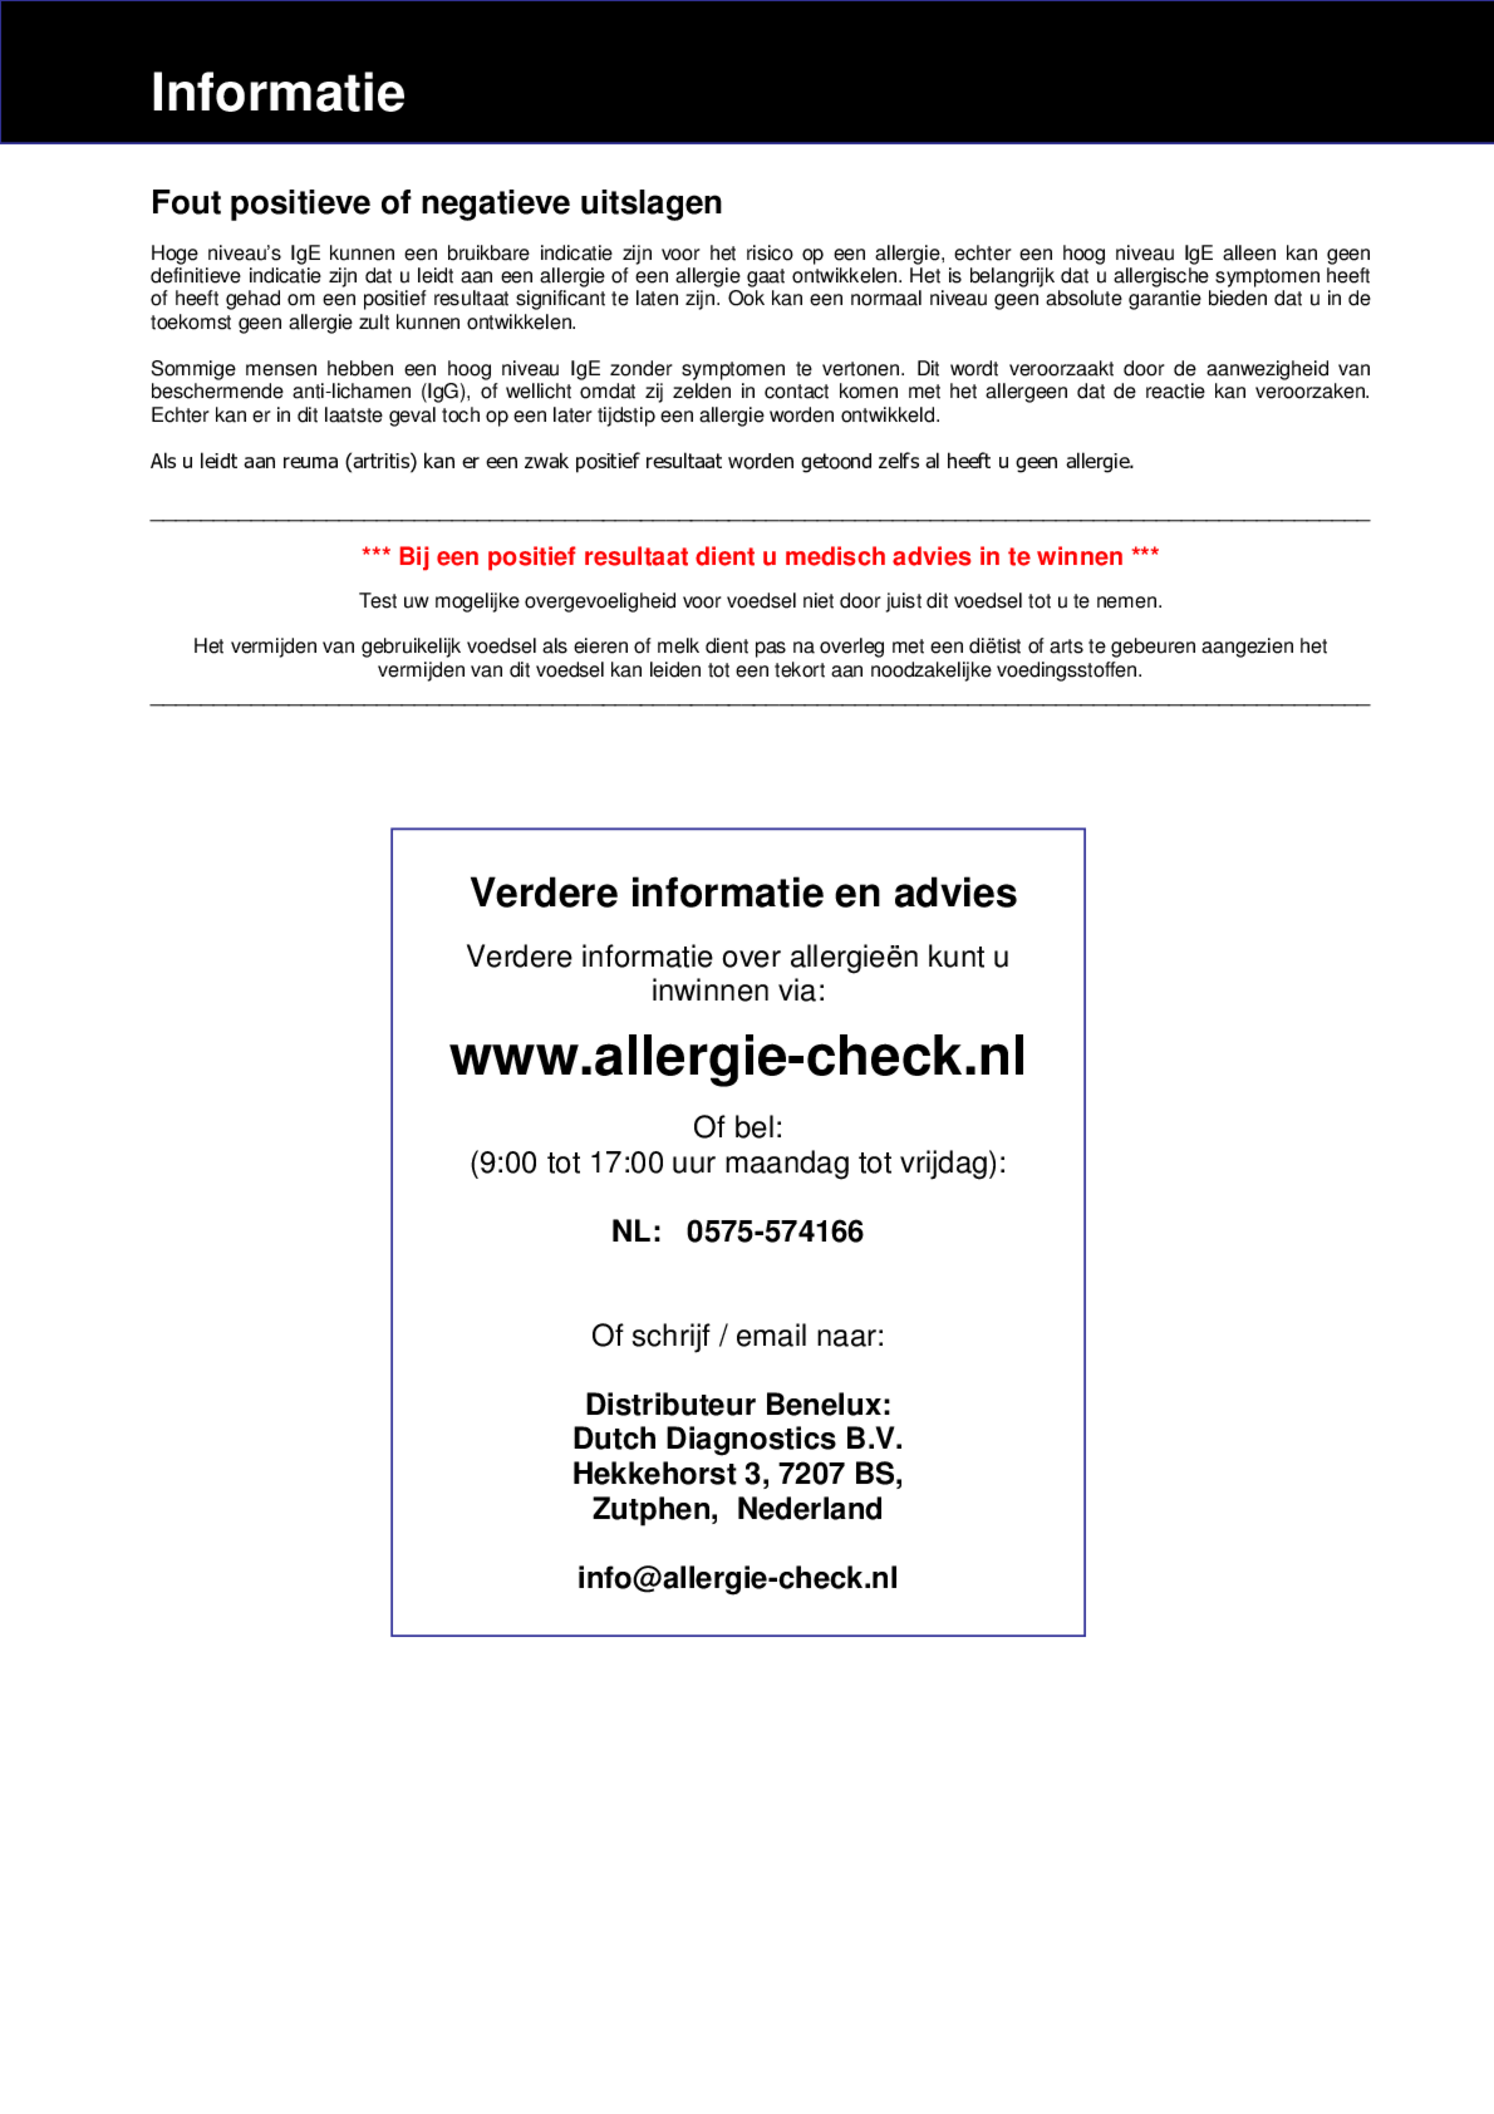 Allergie Check Melk afbeelding van document #3, gebruiksaanwijzing